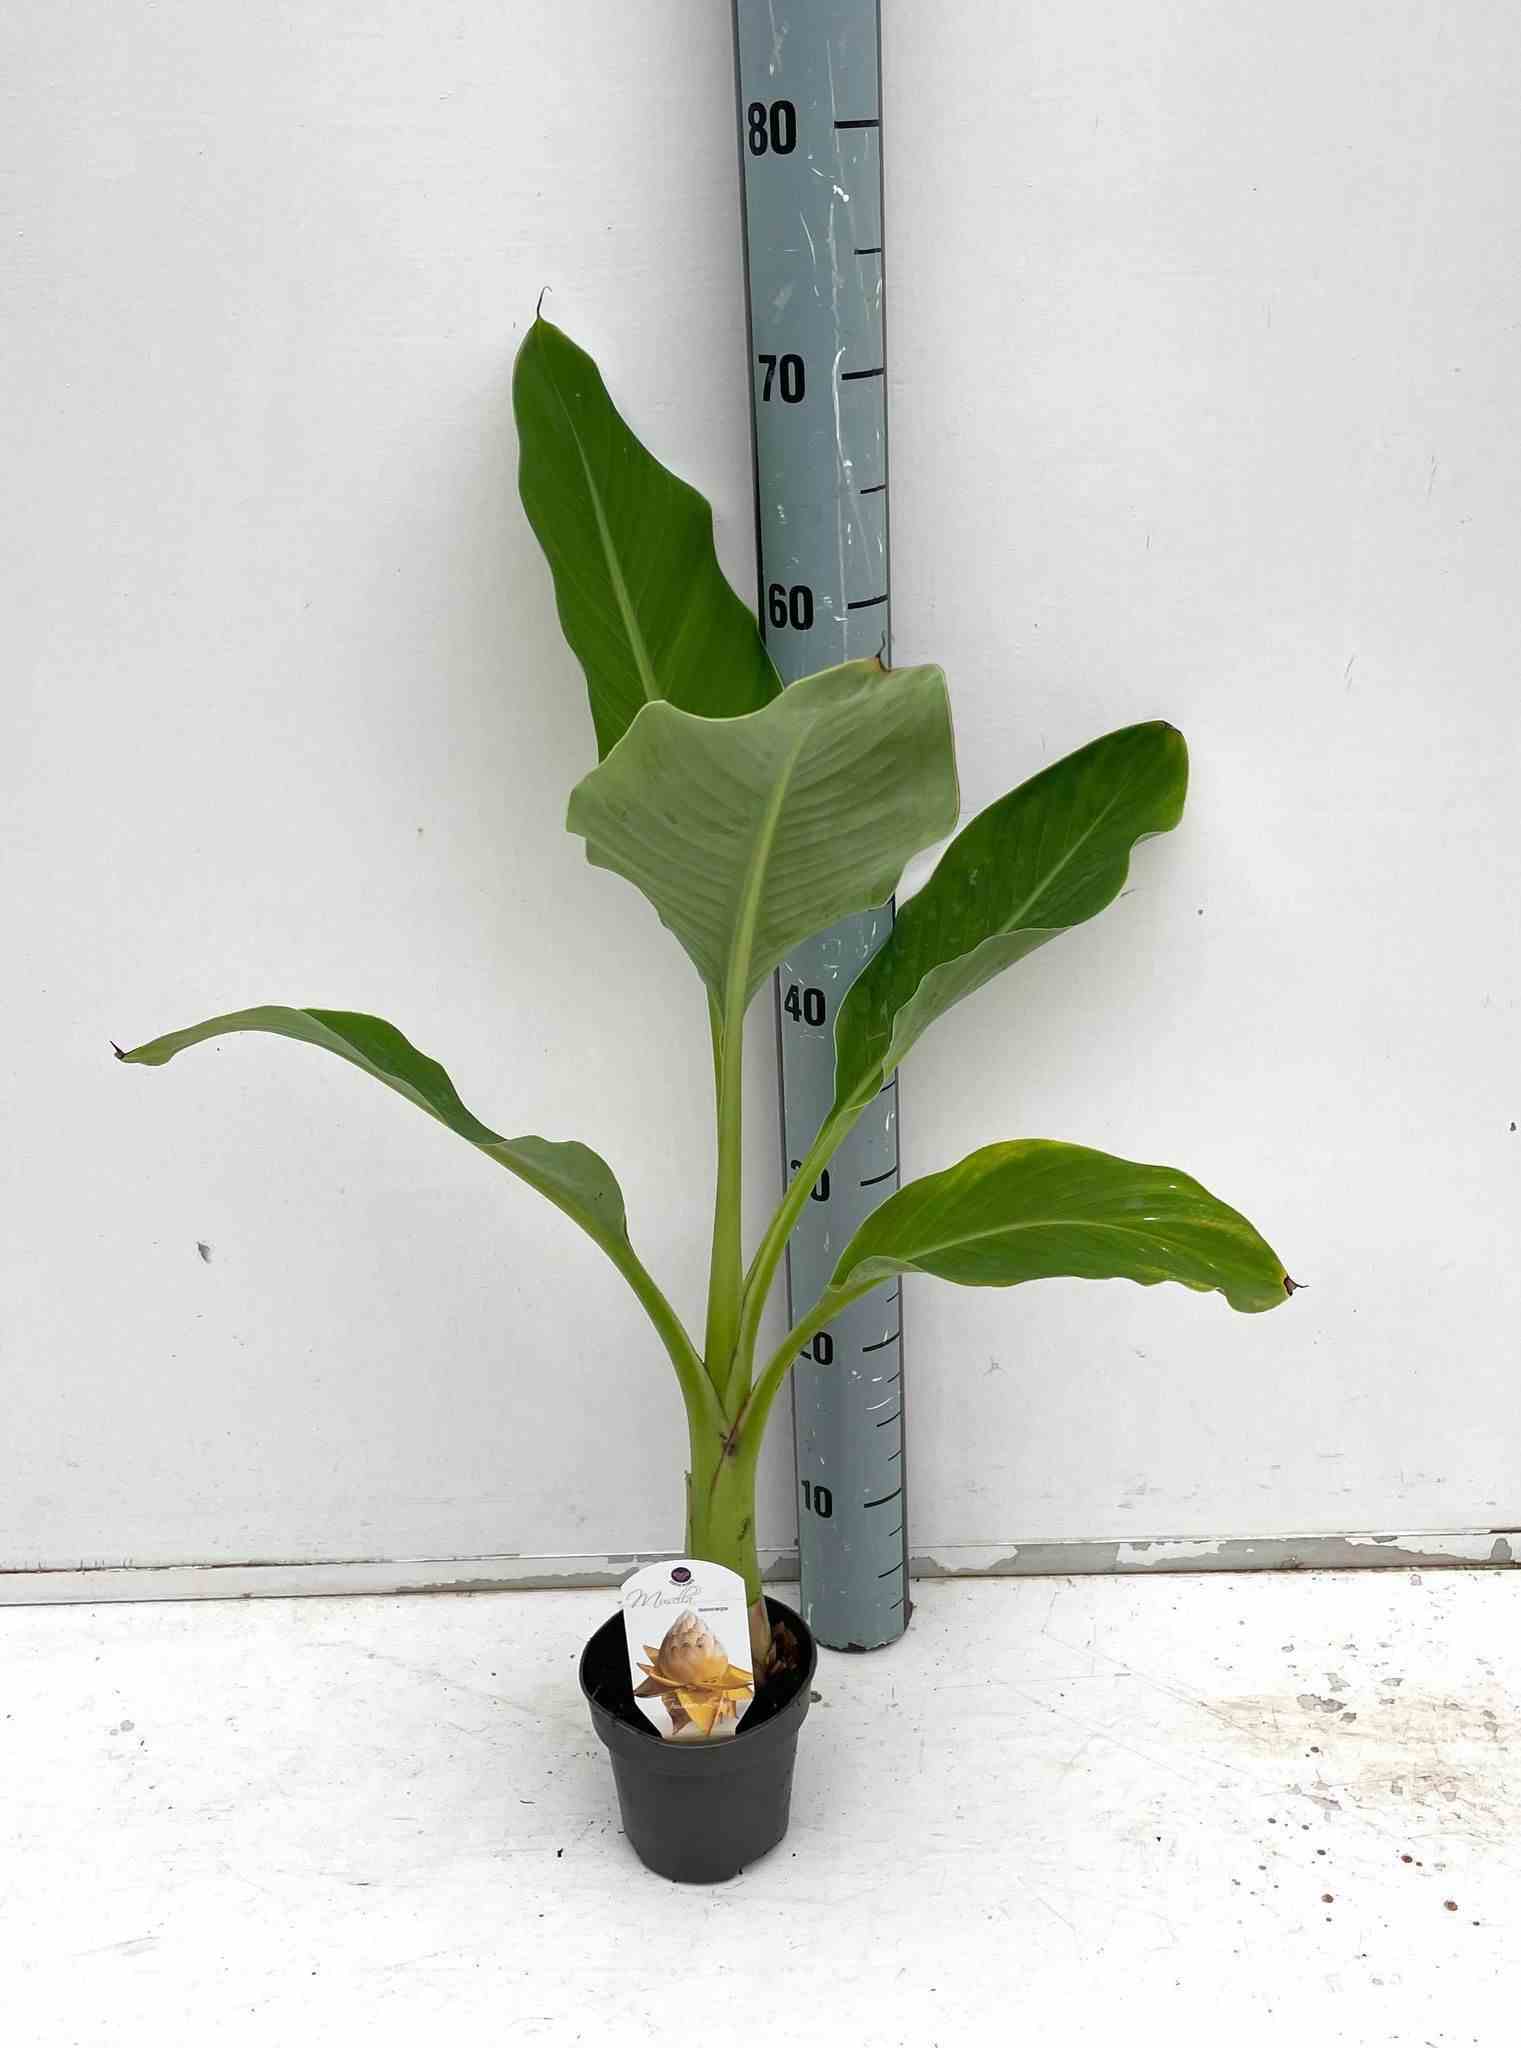 Musella lasiocarpa (bananier lotus d'or)   jaune - taille pot de 6 litres -60/80 cm